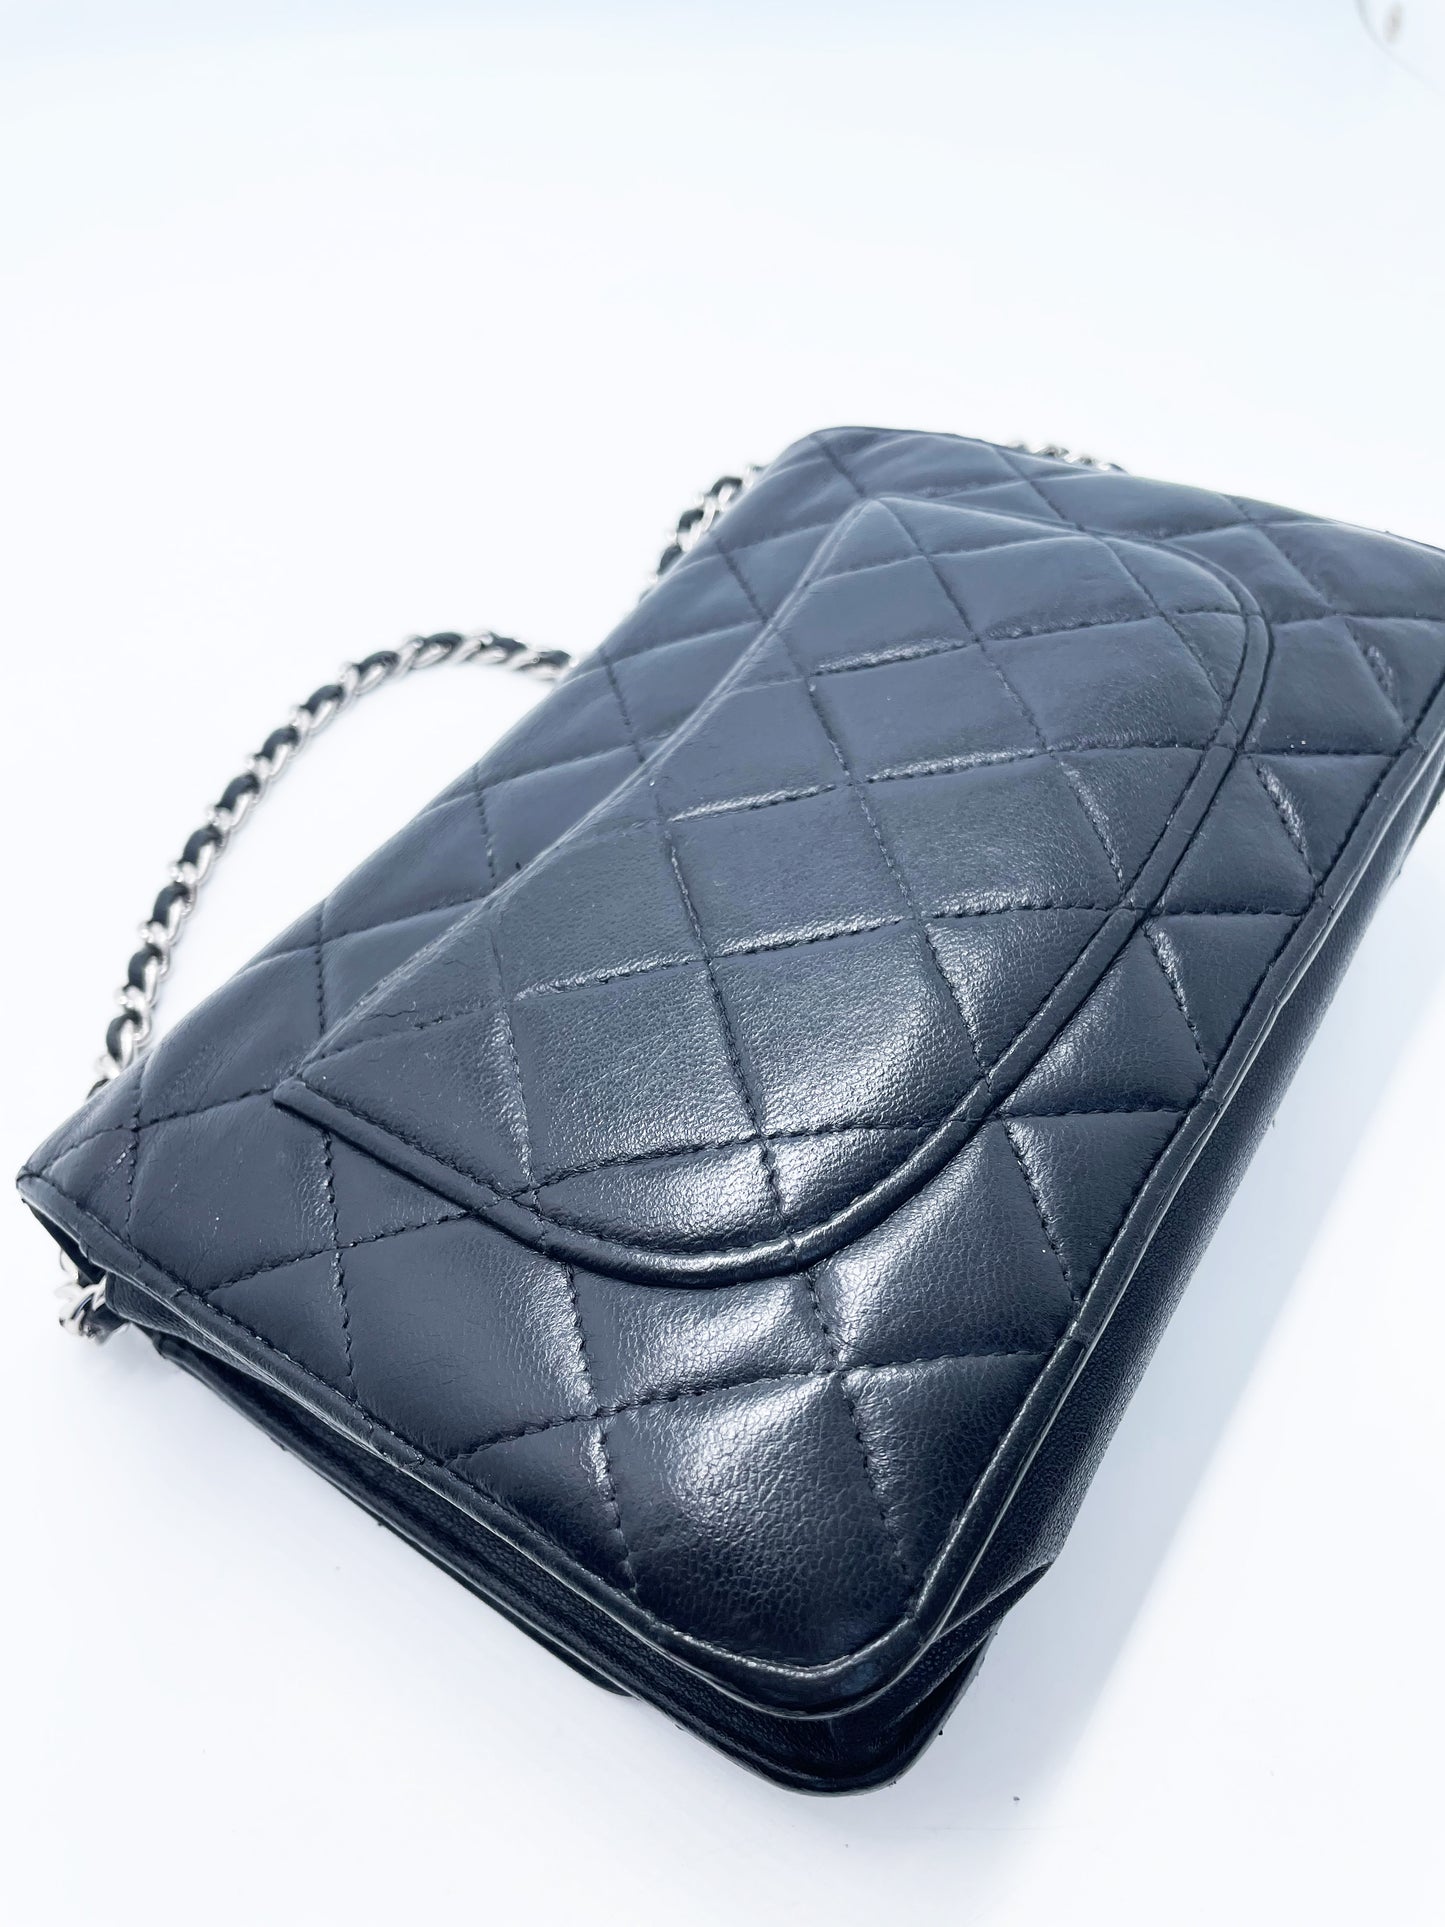 Sac Chanel bandoulière wallet on chain (woc) en cuir noir